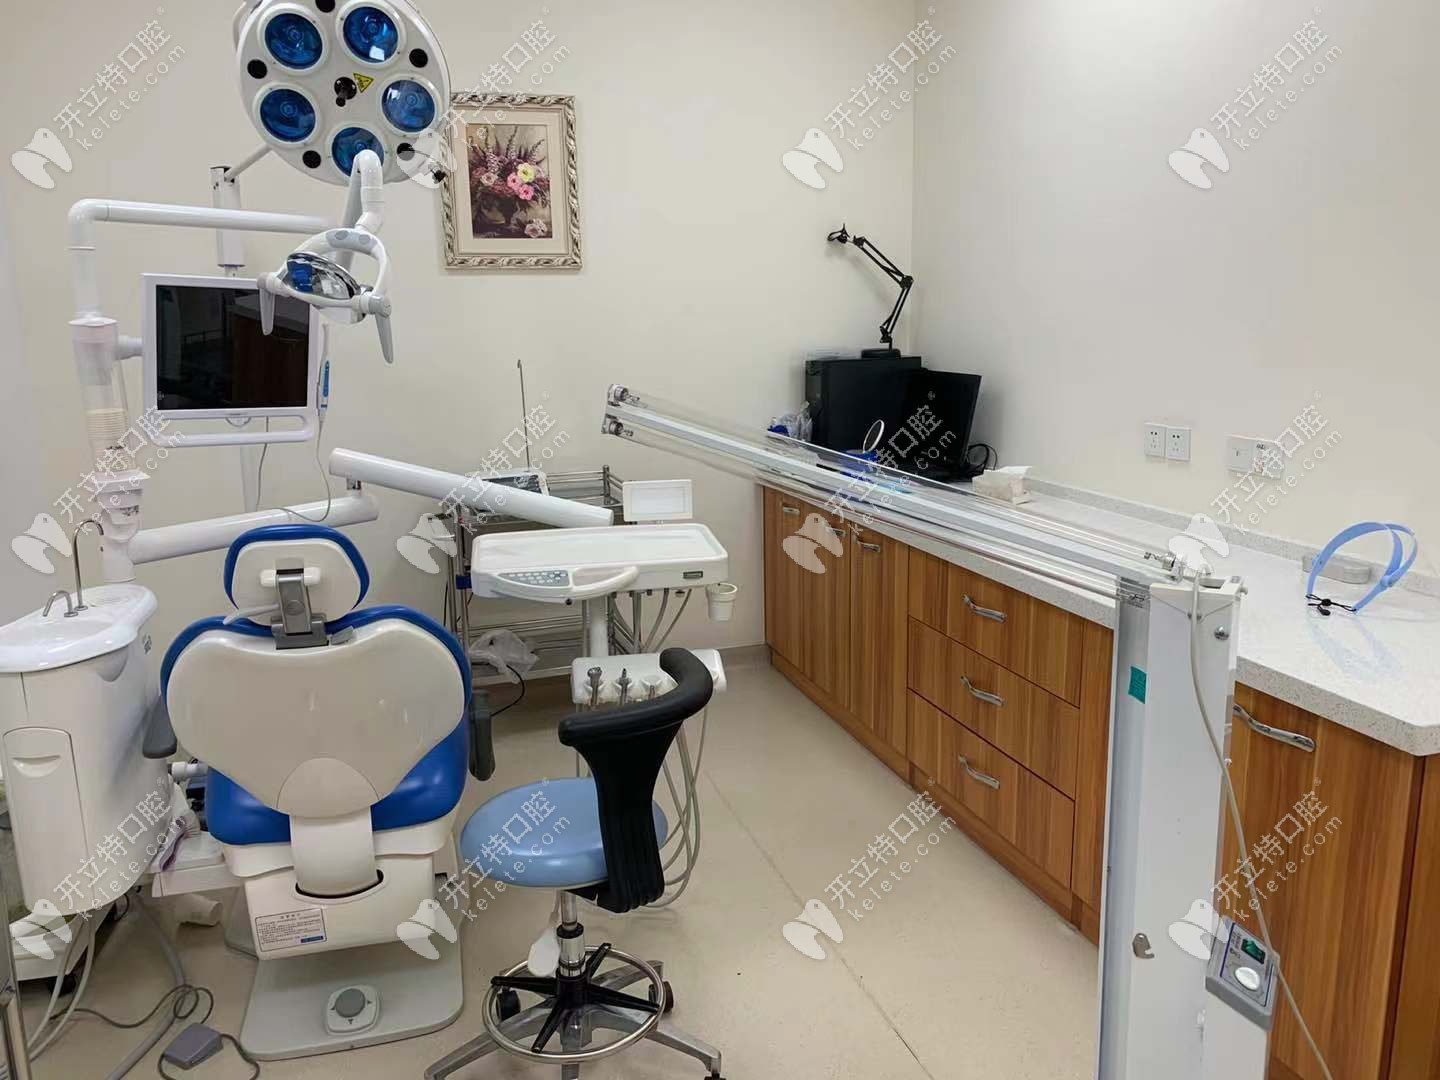 吉林市壹舟牙科种植牙如何呢?私立牙科的种植医师挺负责